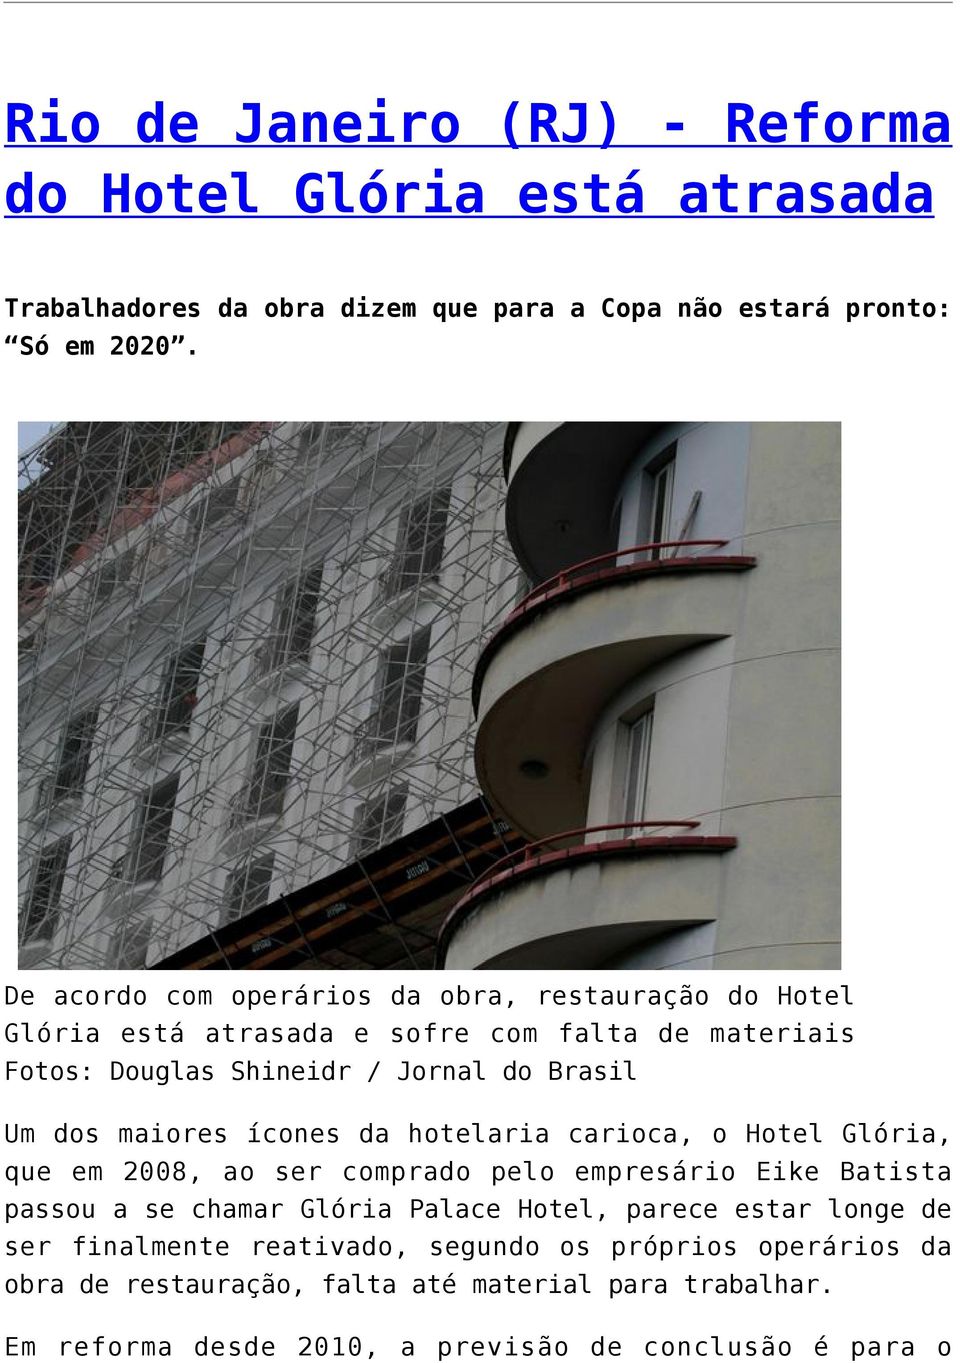 maiores ícones da hotelaria carioca, o Hotel Glória, que em 2008, ao ser comprado pelo empresário Eike Batista passou a se chamar Glória Palace Hotel, parece